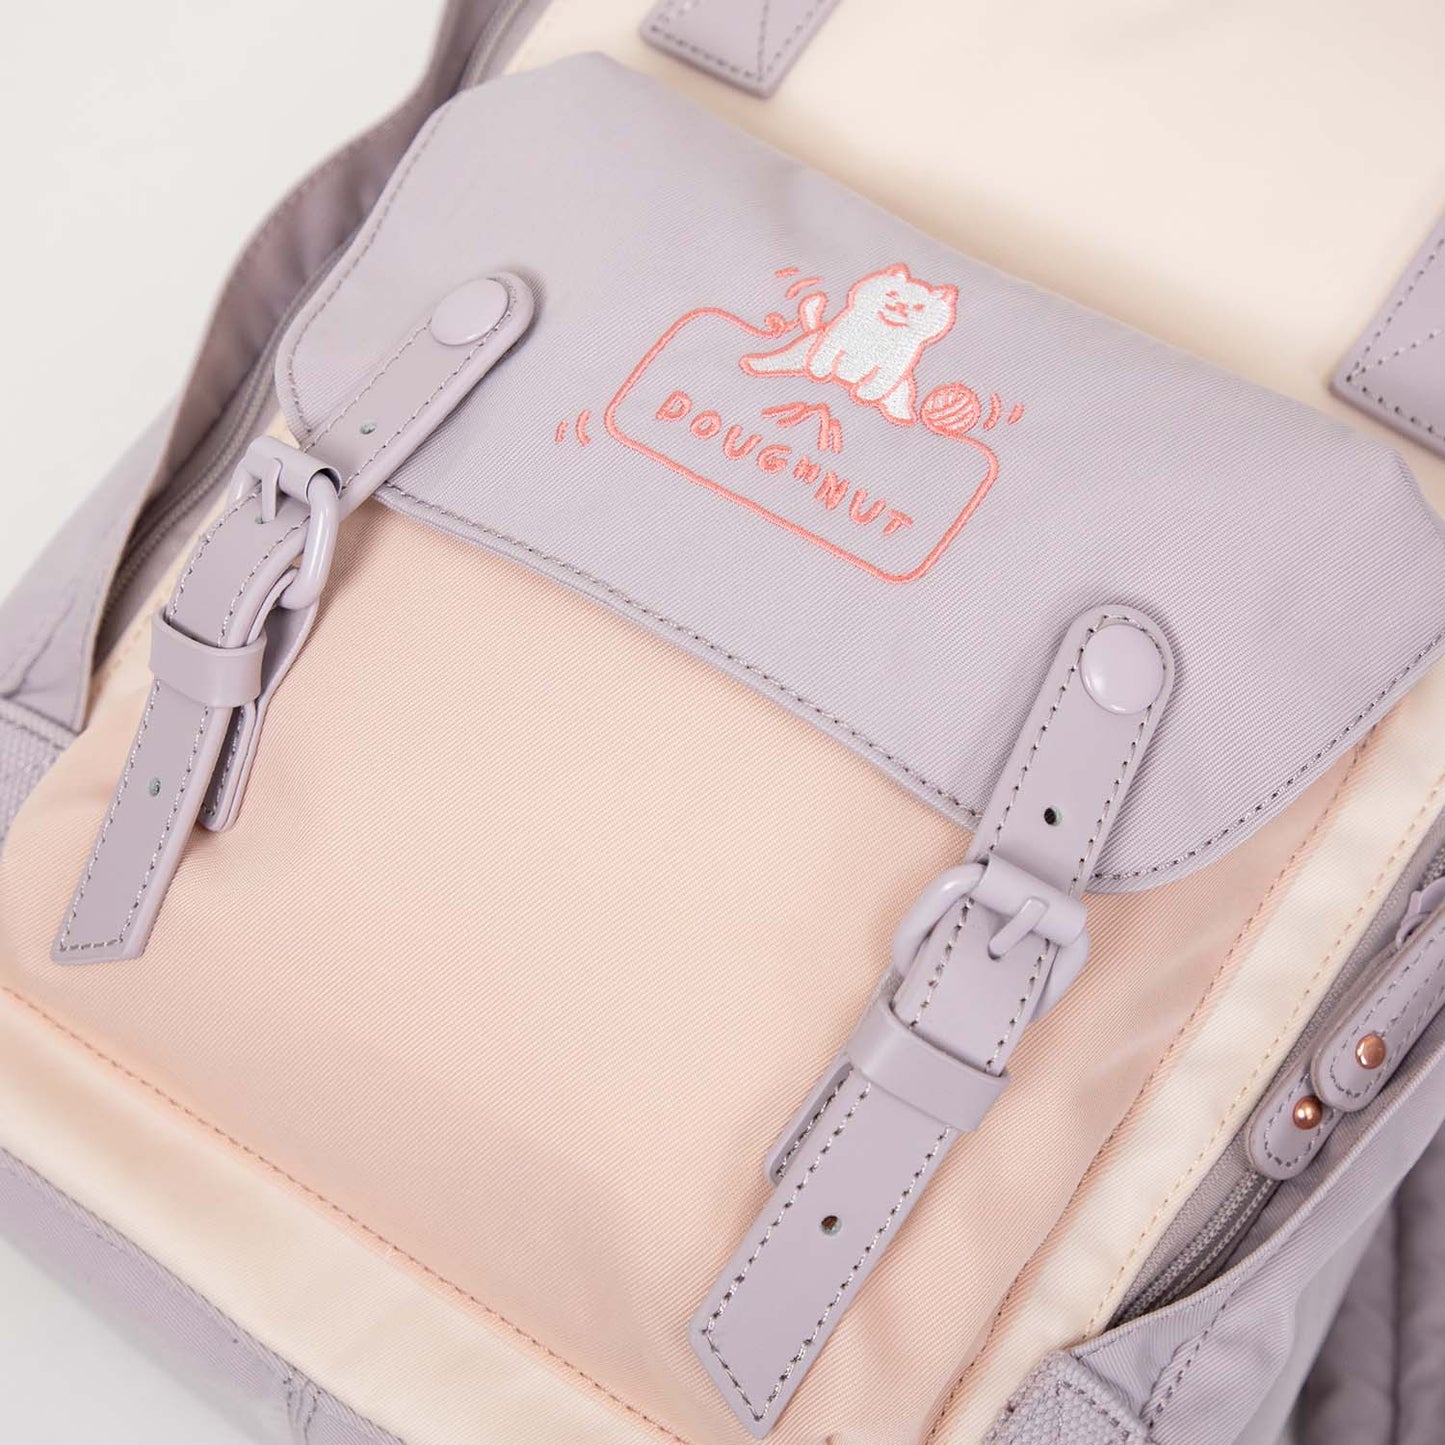 Macaroon Fairies & Friends Series Backpack